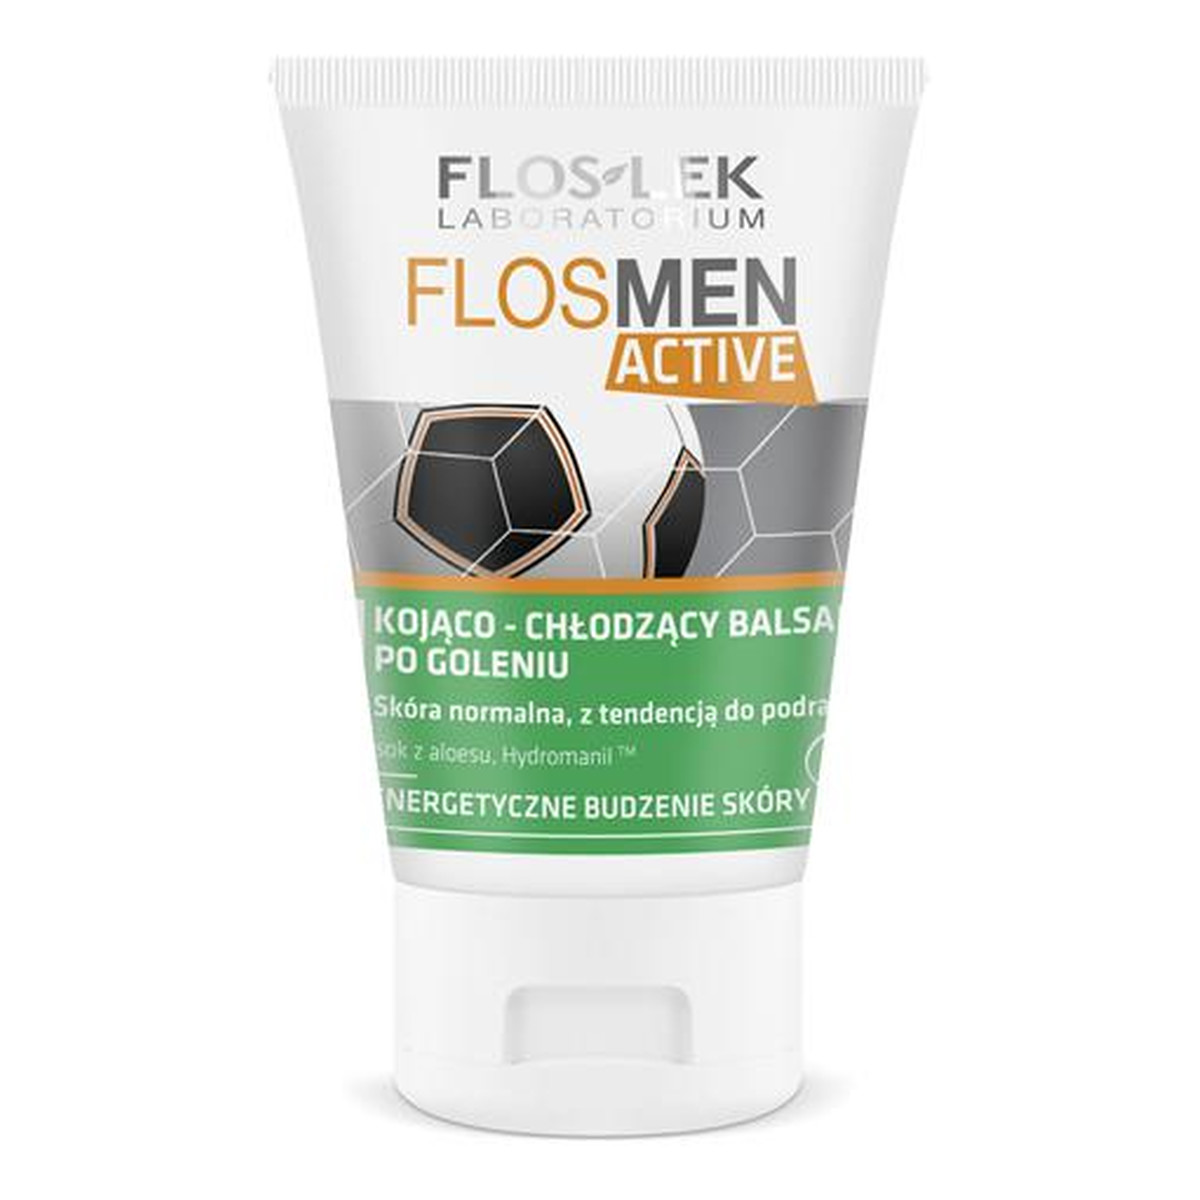 FlosLek FlosMen Active Laboratorium Kojąco Chłodzący Balsam Po Goleniu 125ml